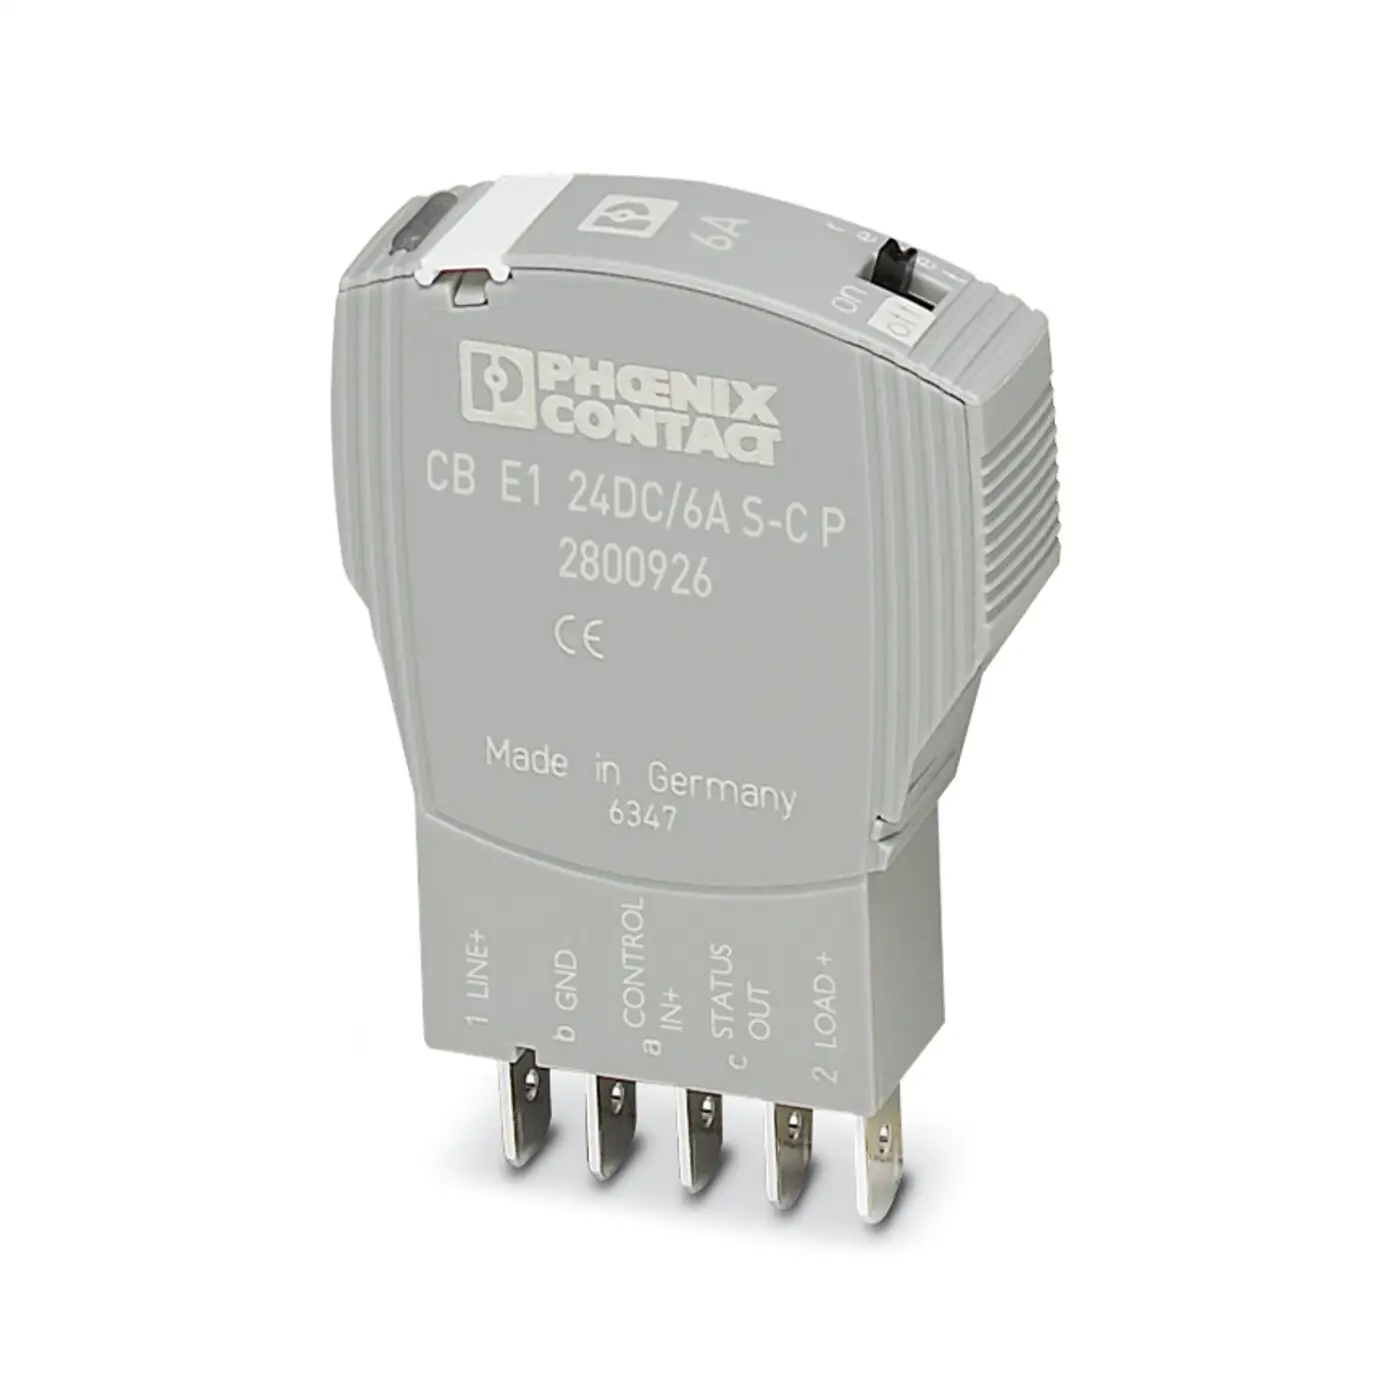 2800926 CB E1 24DC/6A interruttore di circuito per apparecchiature elettroniche S-C P